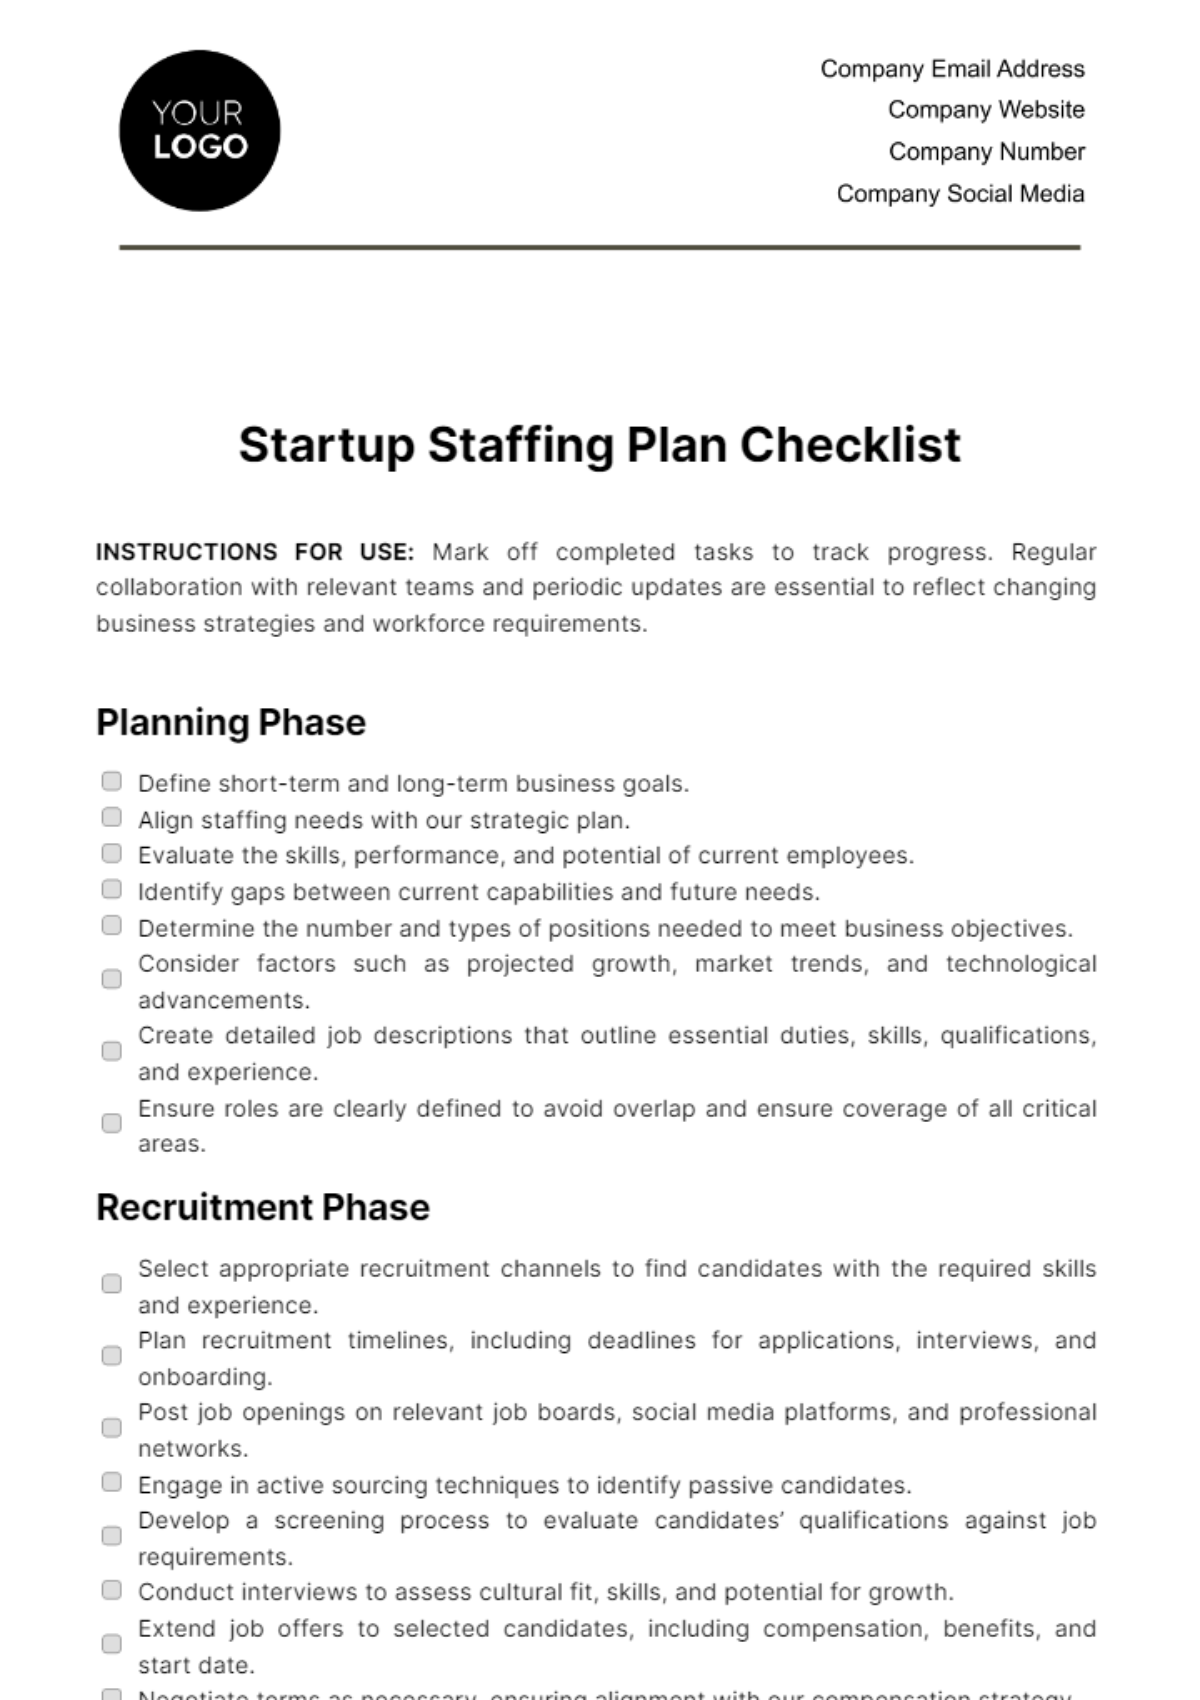 Free Startup Staffing Plan Checklist Template